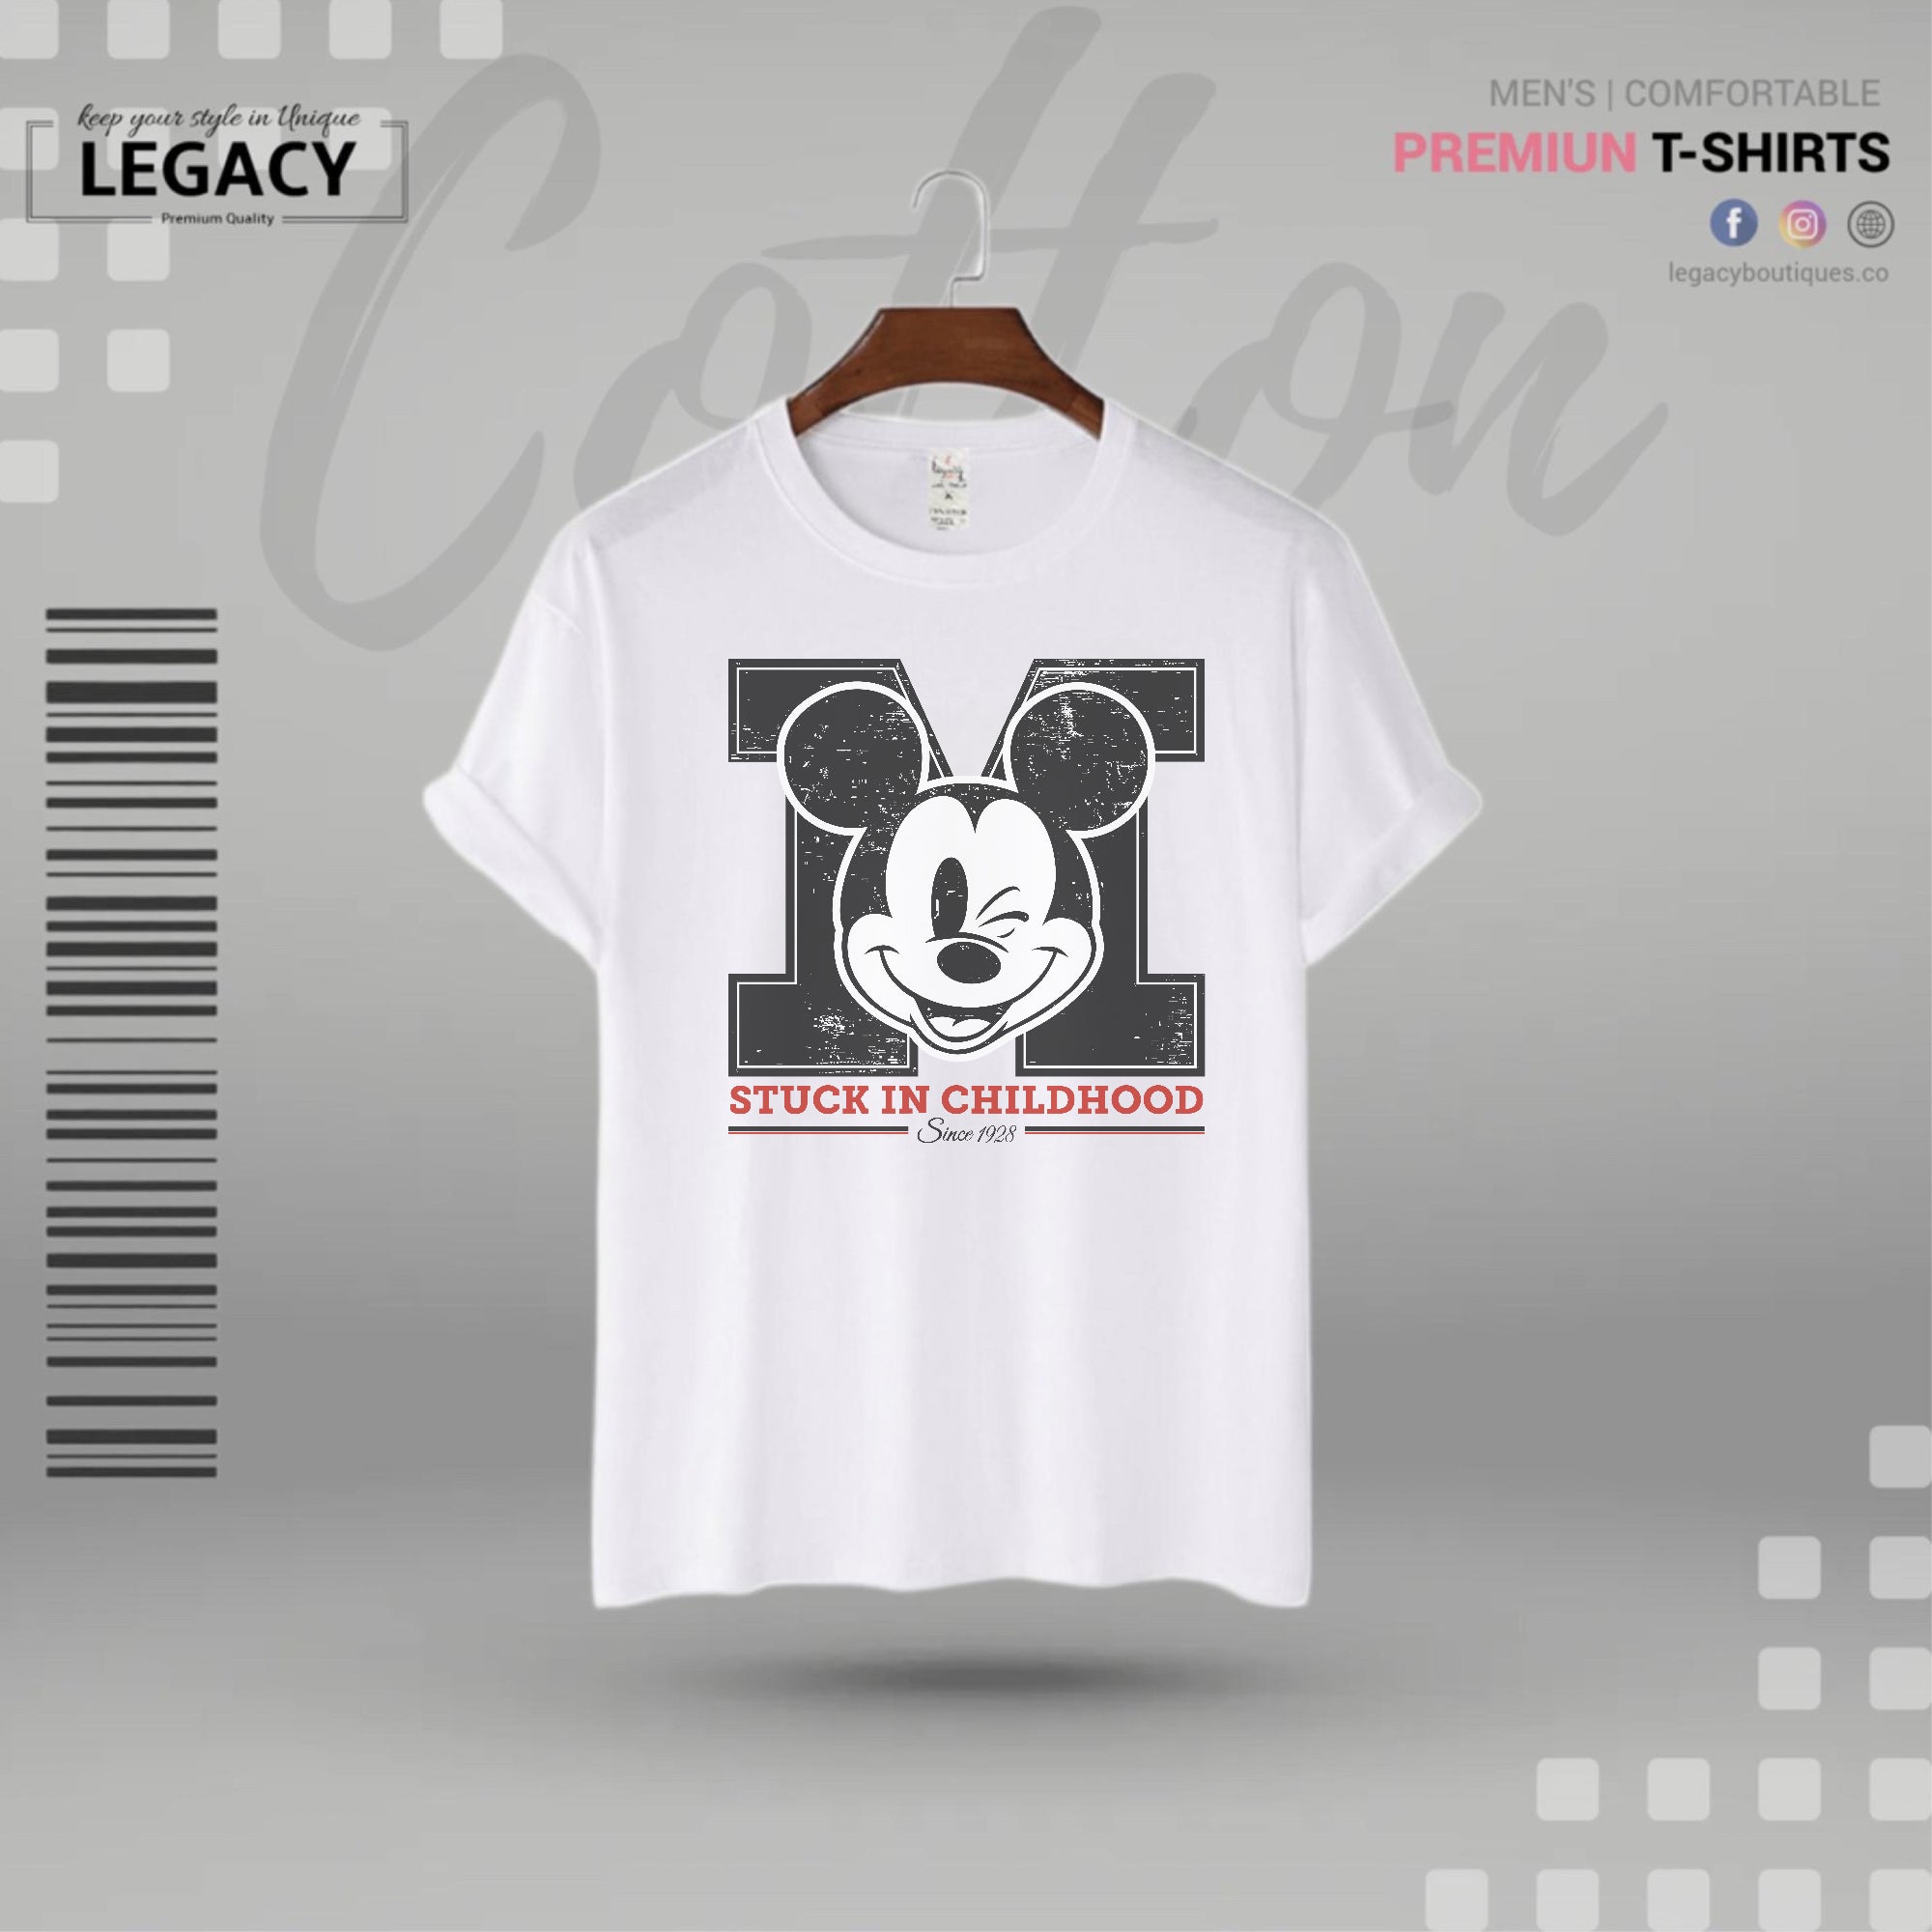 Legacy Men's Premium Designer Edition T-Shirt - Legacy Boutiques